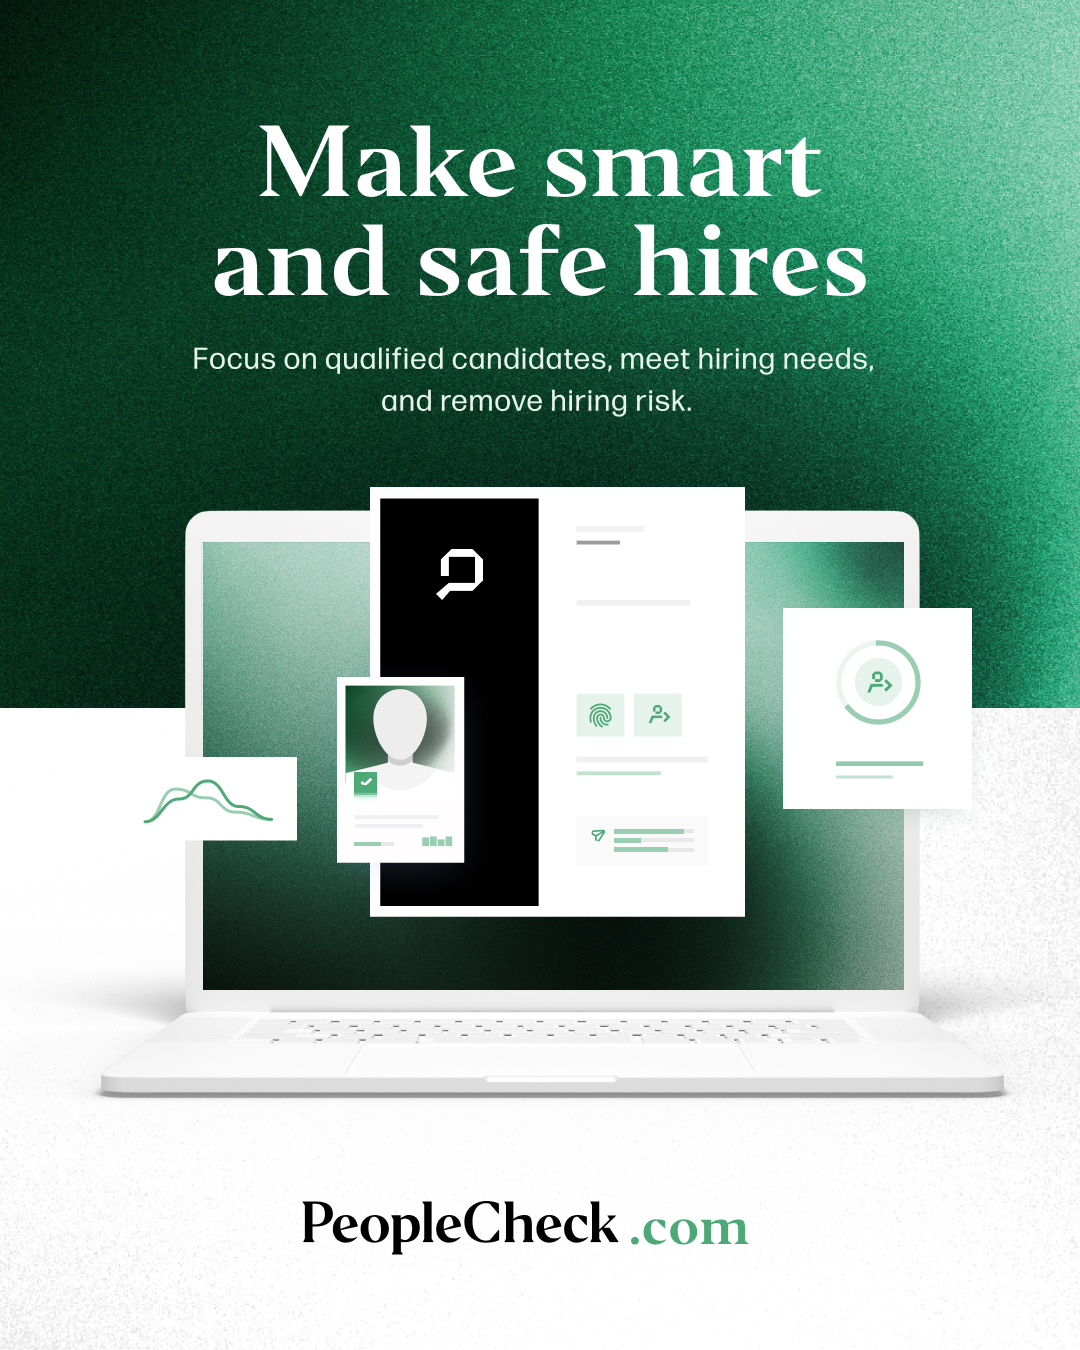 Make smart and safe hires.jpg